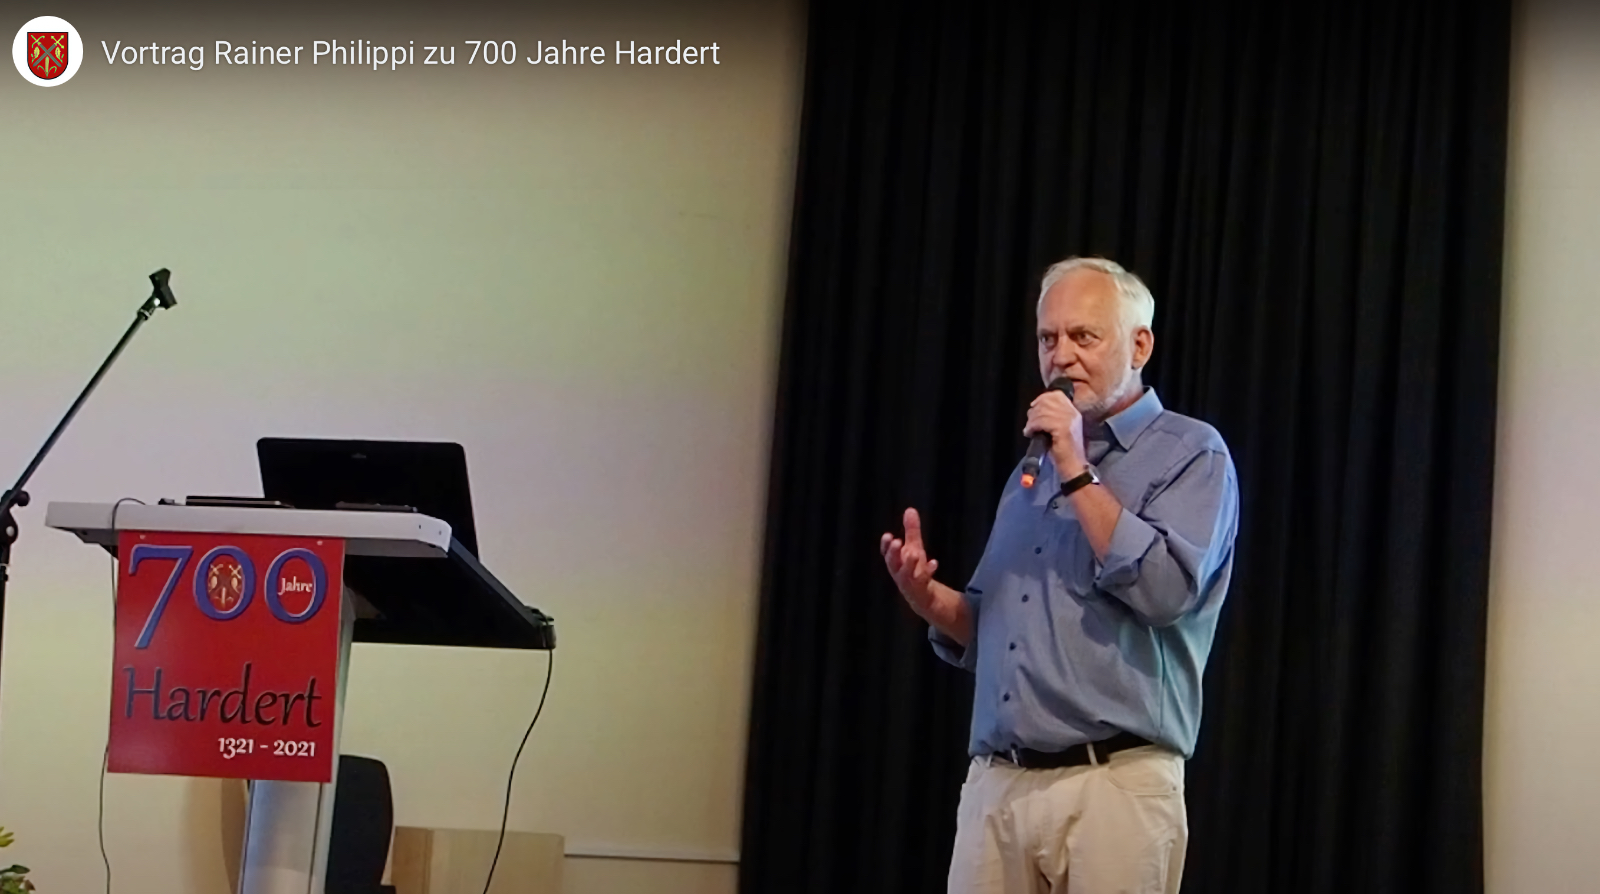 Vortrag Rainer Philippi zur Geschichte Harderts